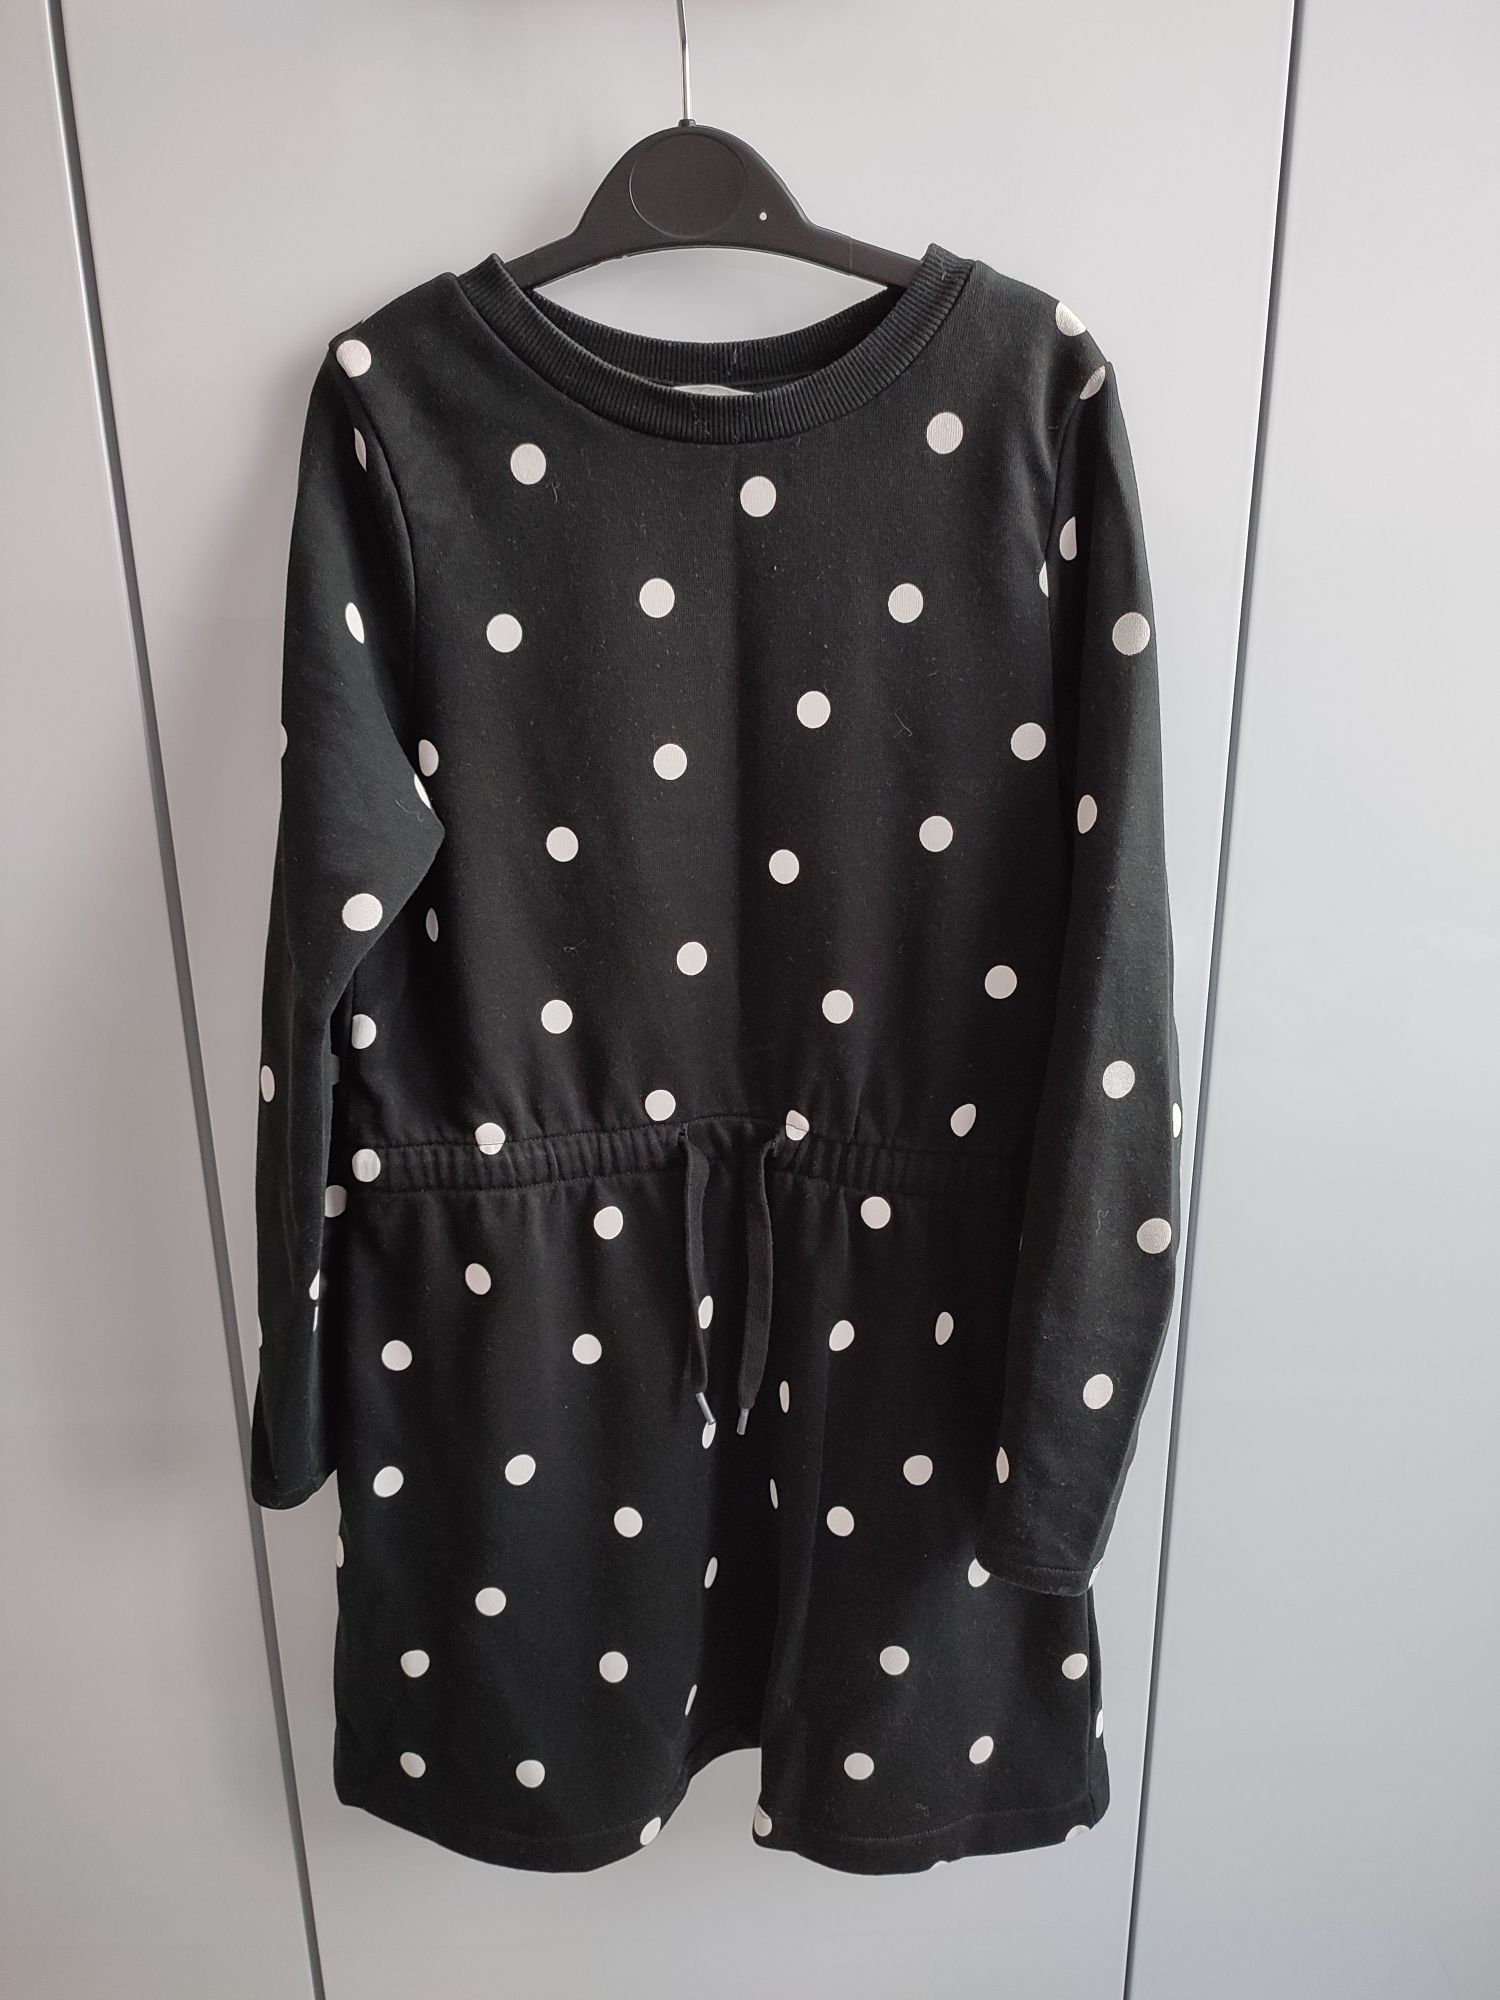 Czarna sukienka w grochy dla dziewczynki, H&M, rozmiar 122/128.